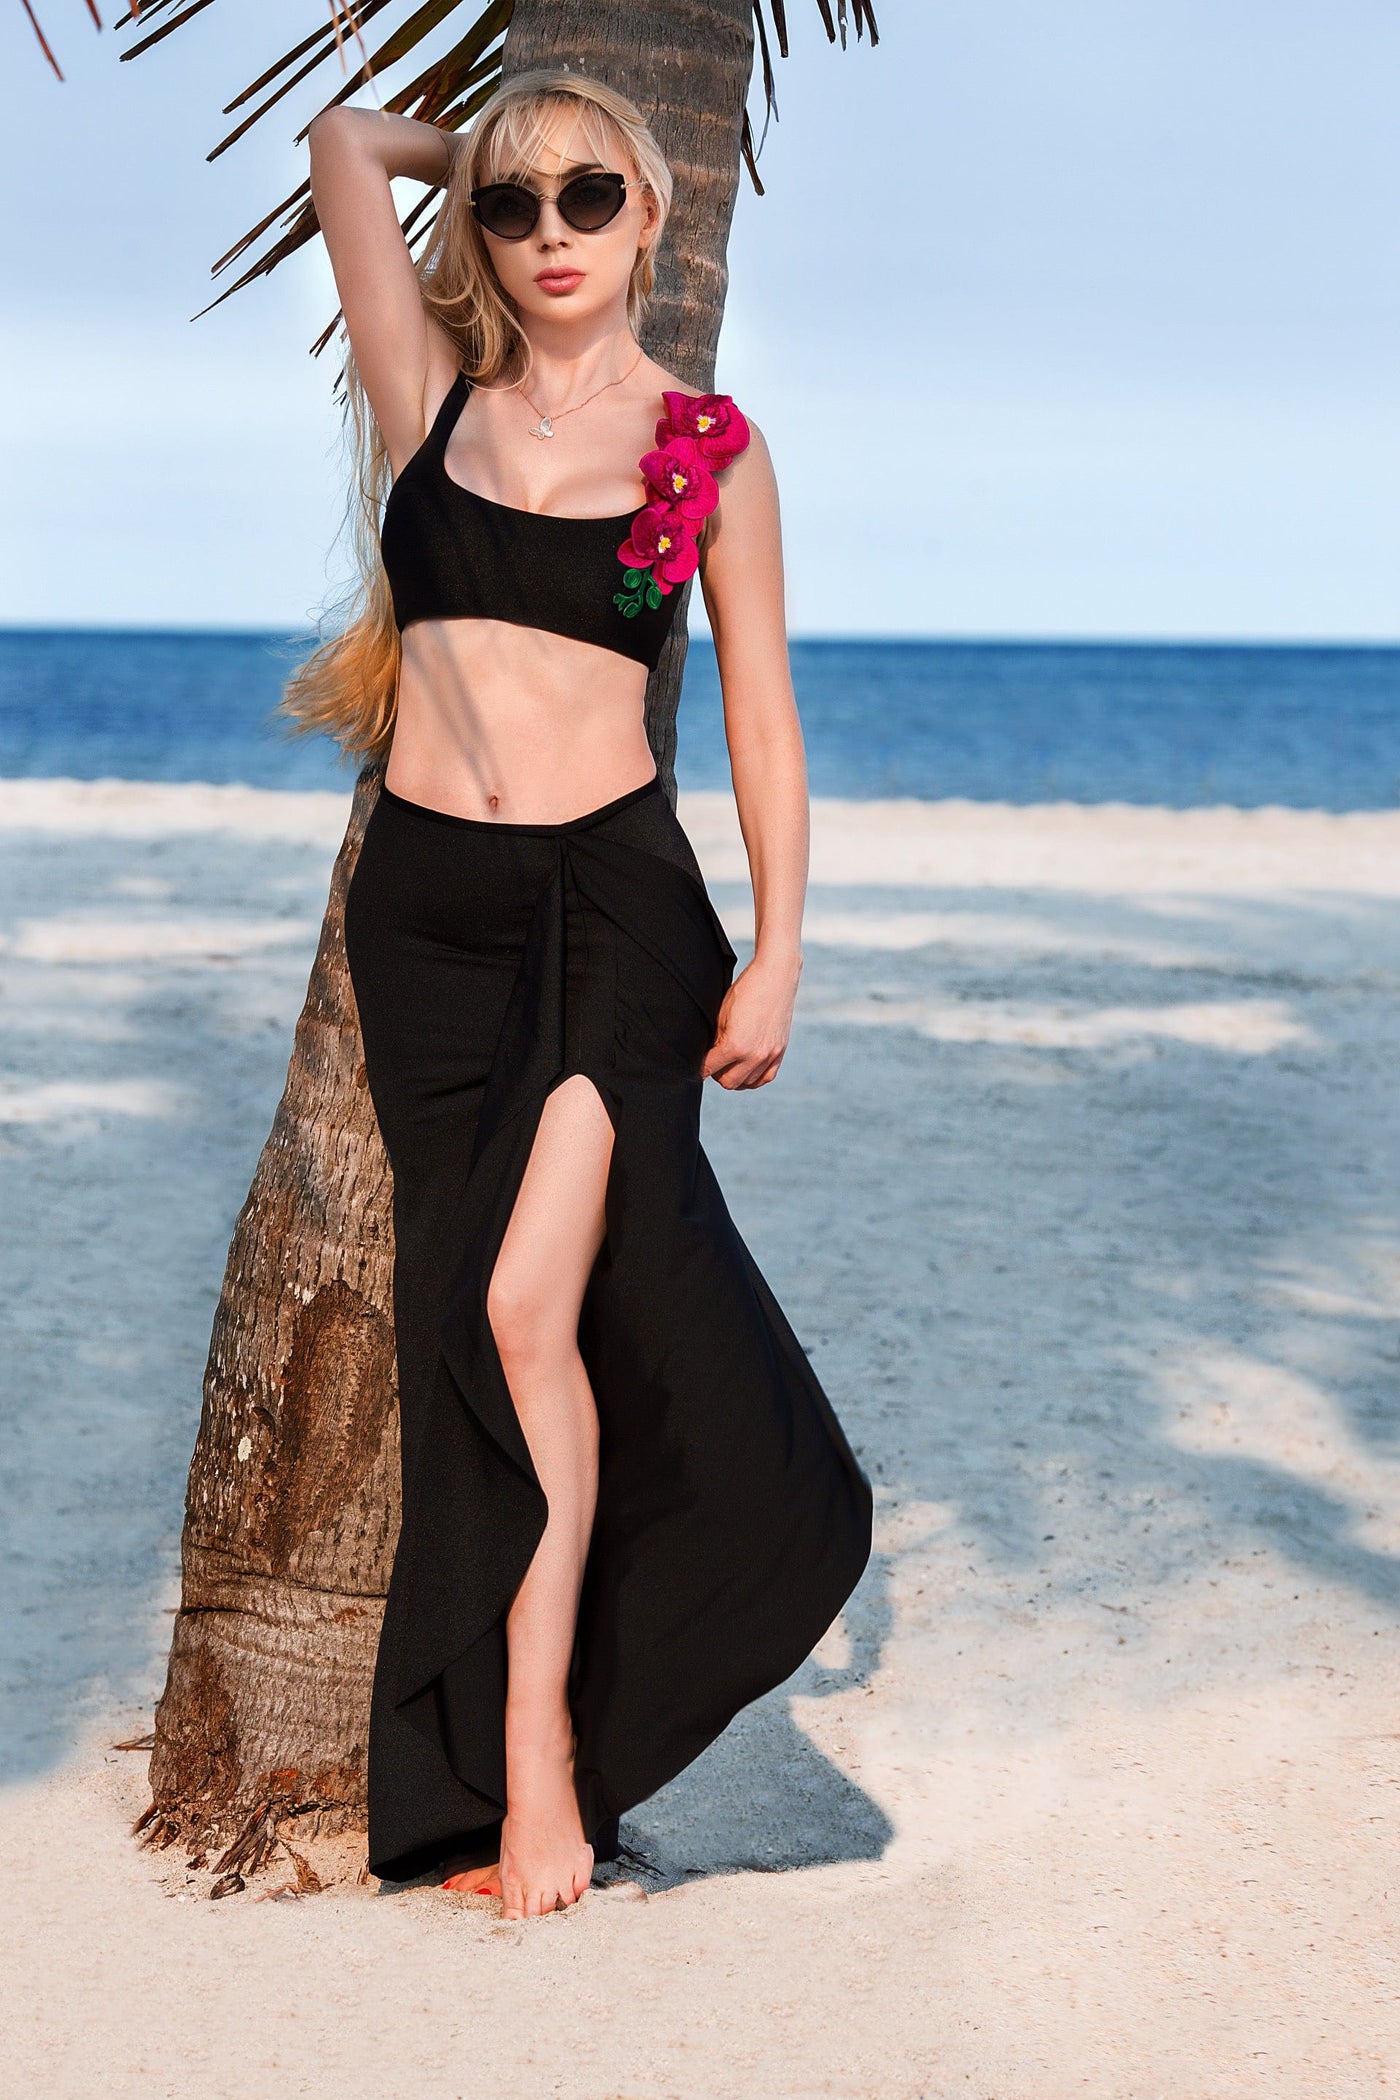 skirt Arcellia Black Skirt 2023 Nikoza Swimwear Arcellia Fucsia Black Skirt Cover-Up Olga Nikoza Swimwear